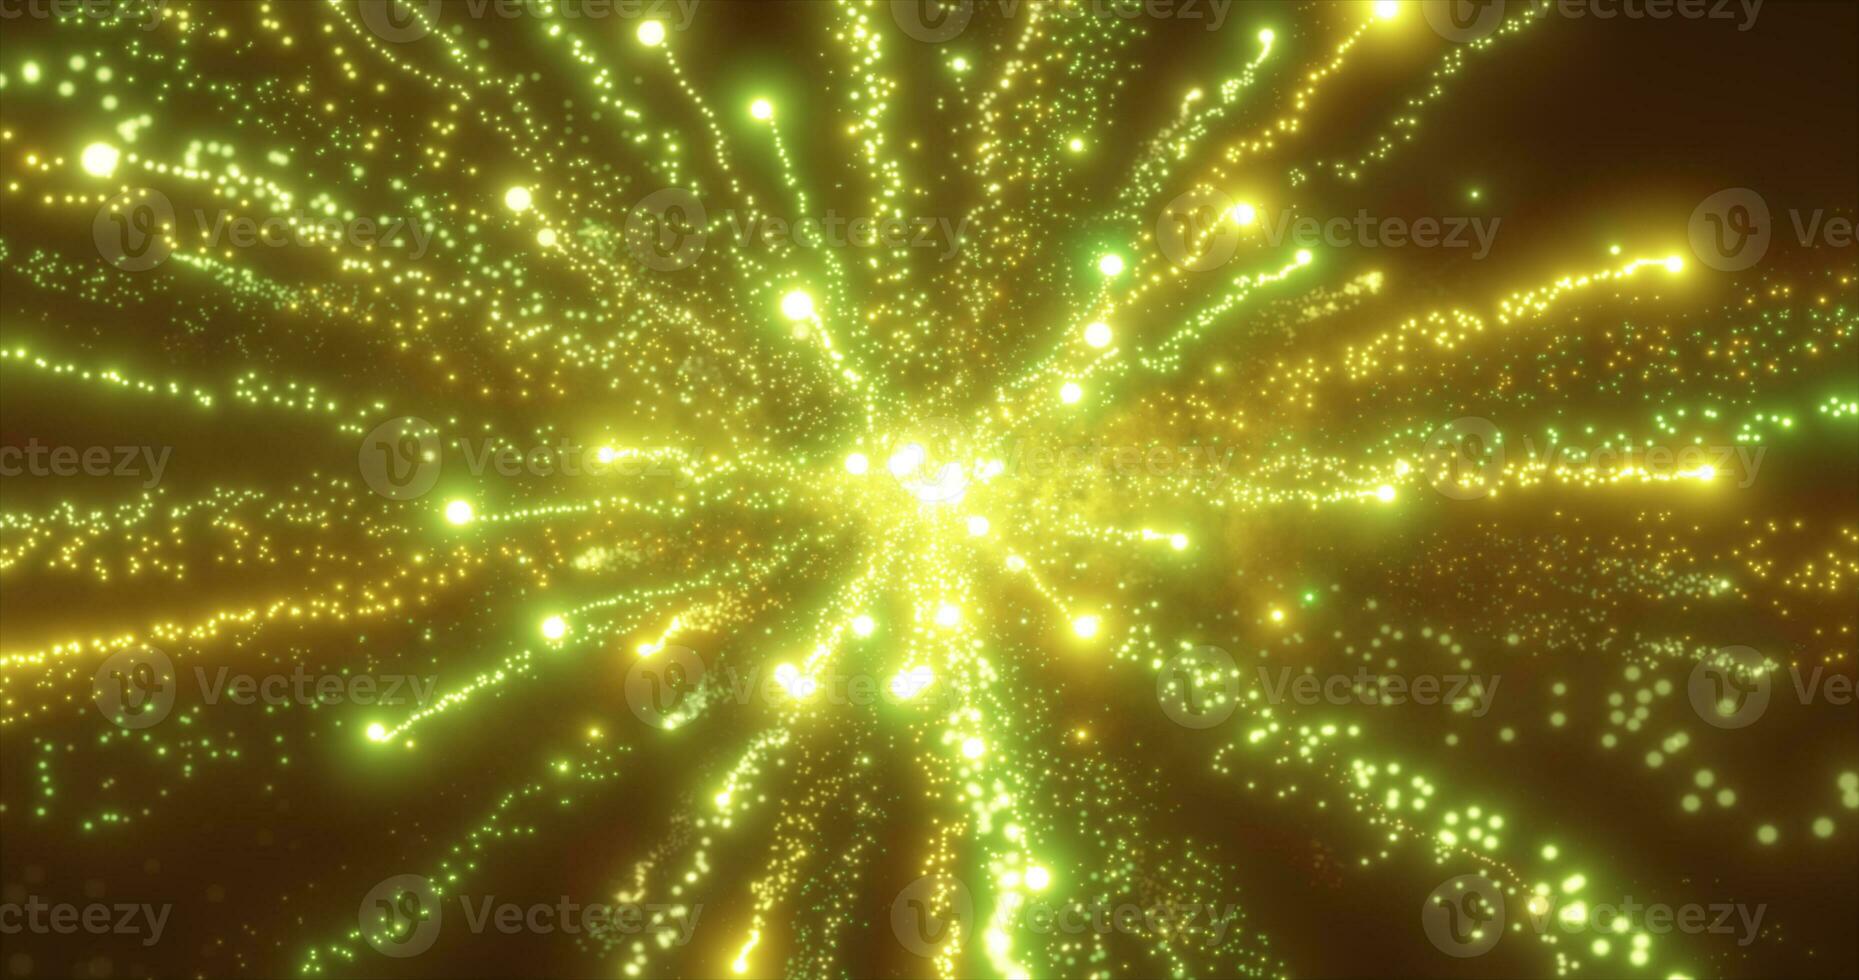 abstrato amarelo energia fogos de artifício partícula saudação mágico brilhante brilhando futurista oi-tech com borrão efeito e bokeh fundo foto